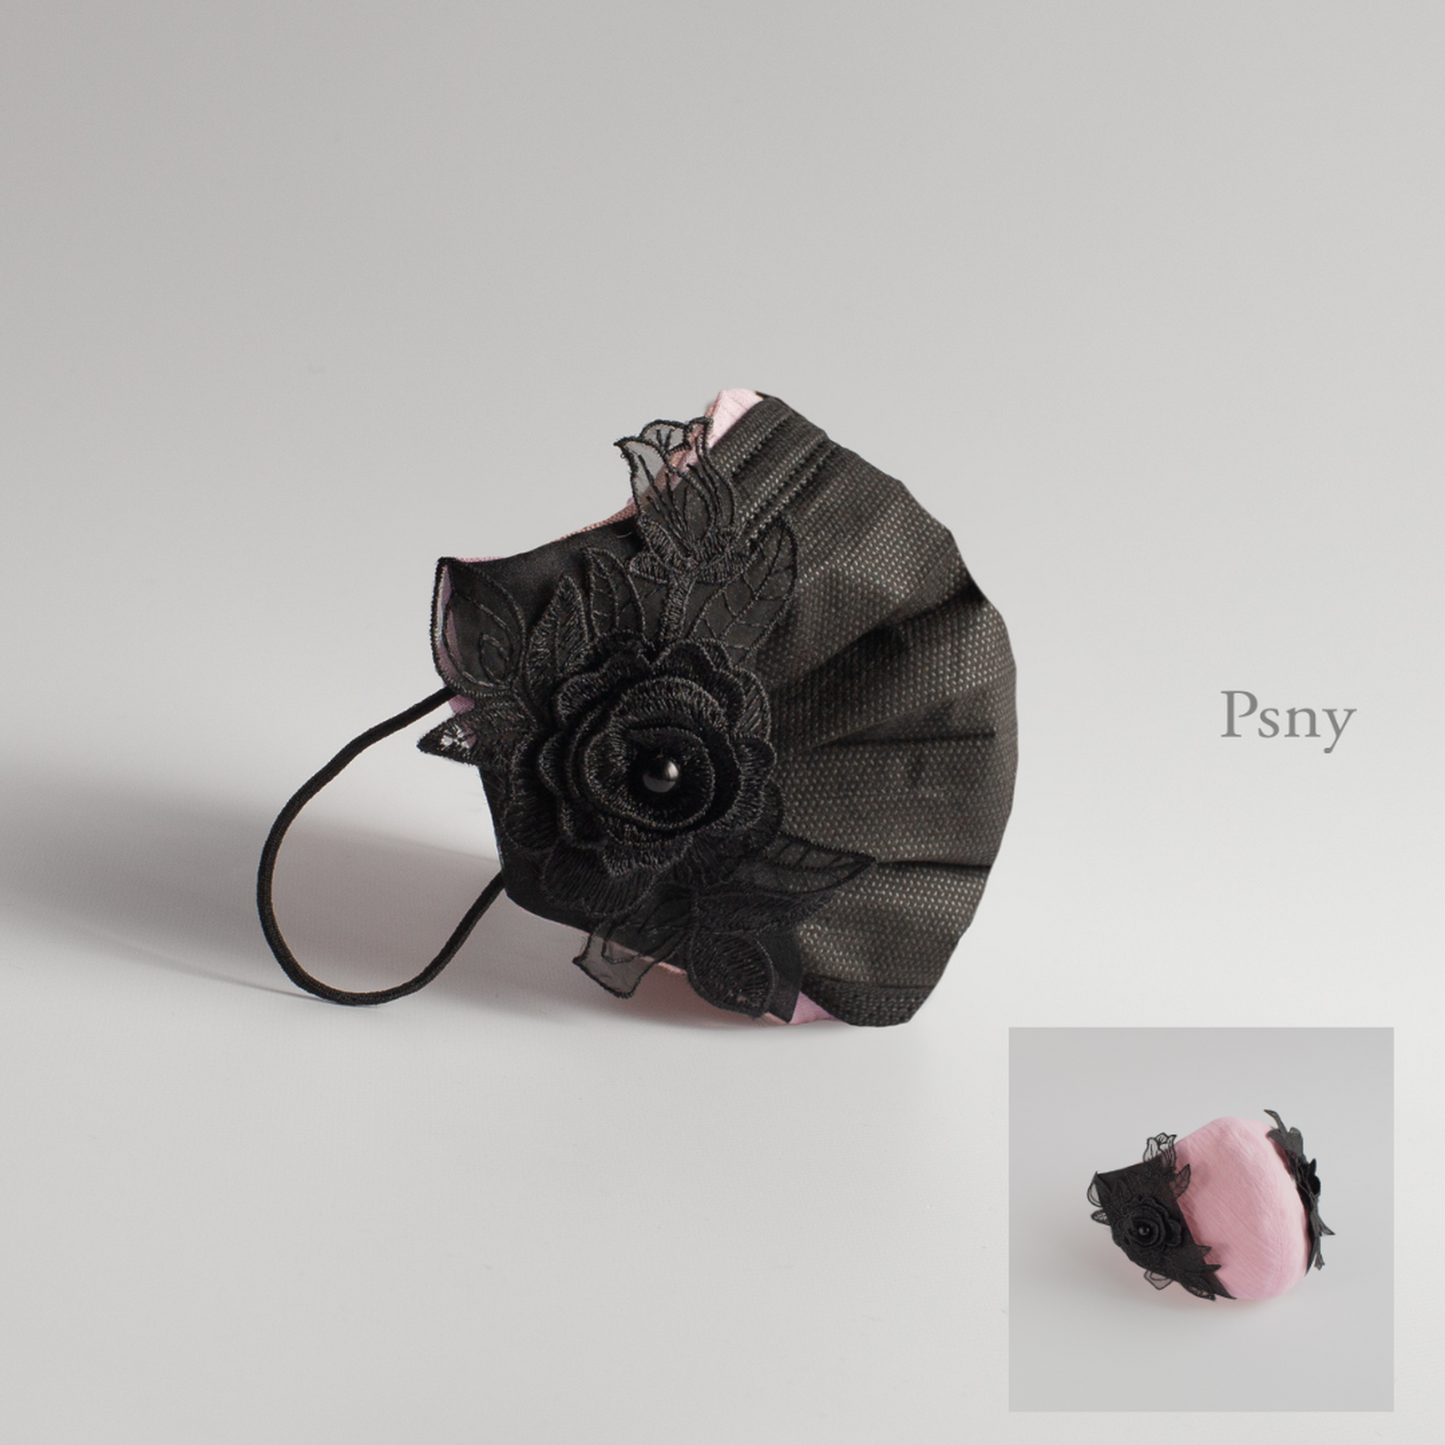 PSNY 2way 粉紅色亞麻麵膜罩裝飾黑色三維花朵圖案 結合無紡布面膜 皮膚面/絲綢可選 帶繩面膜罩 立體美人兩用 2W14